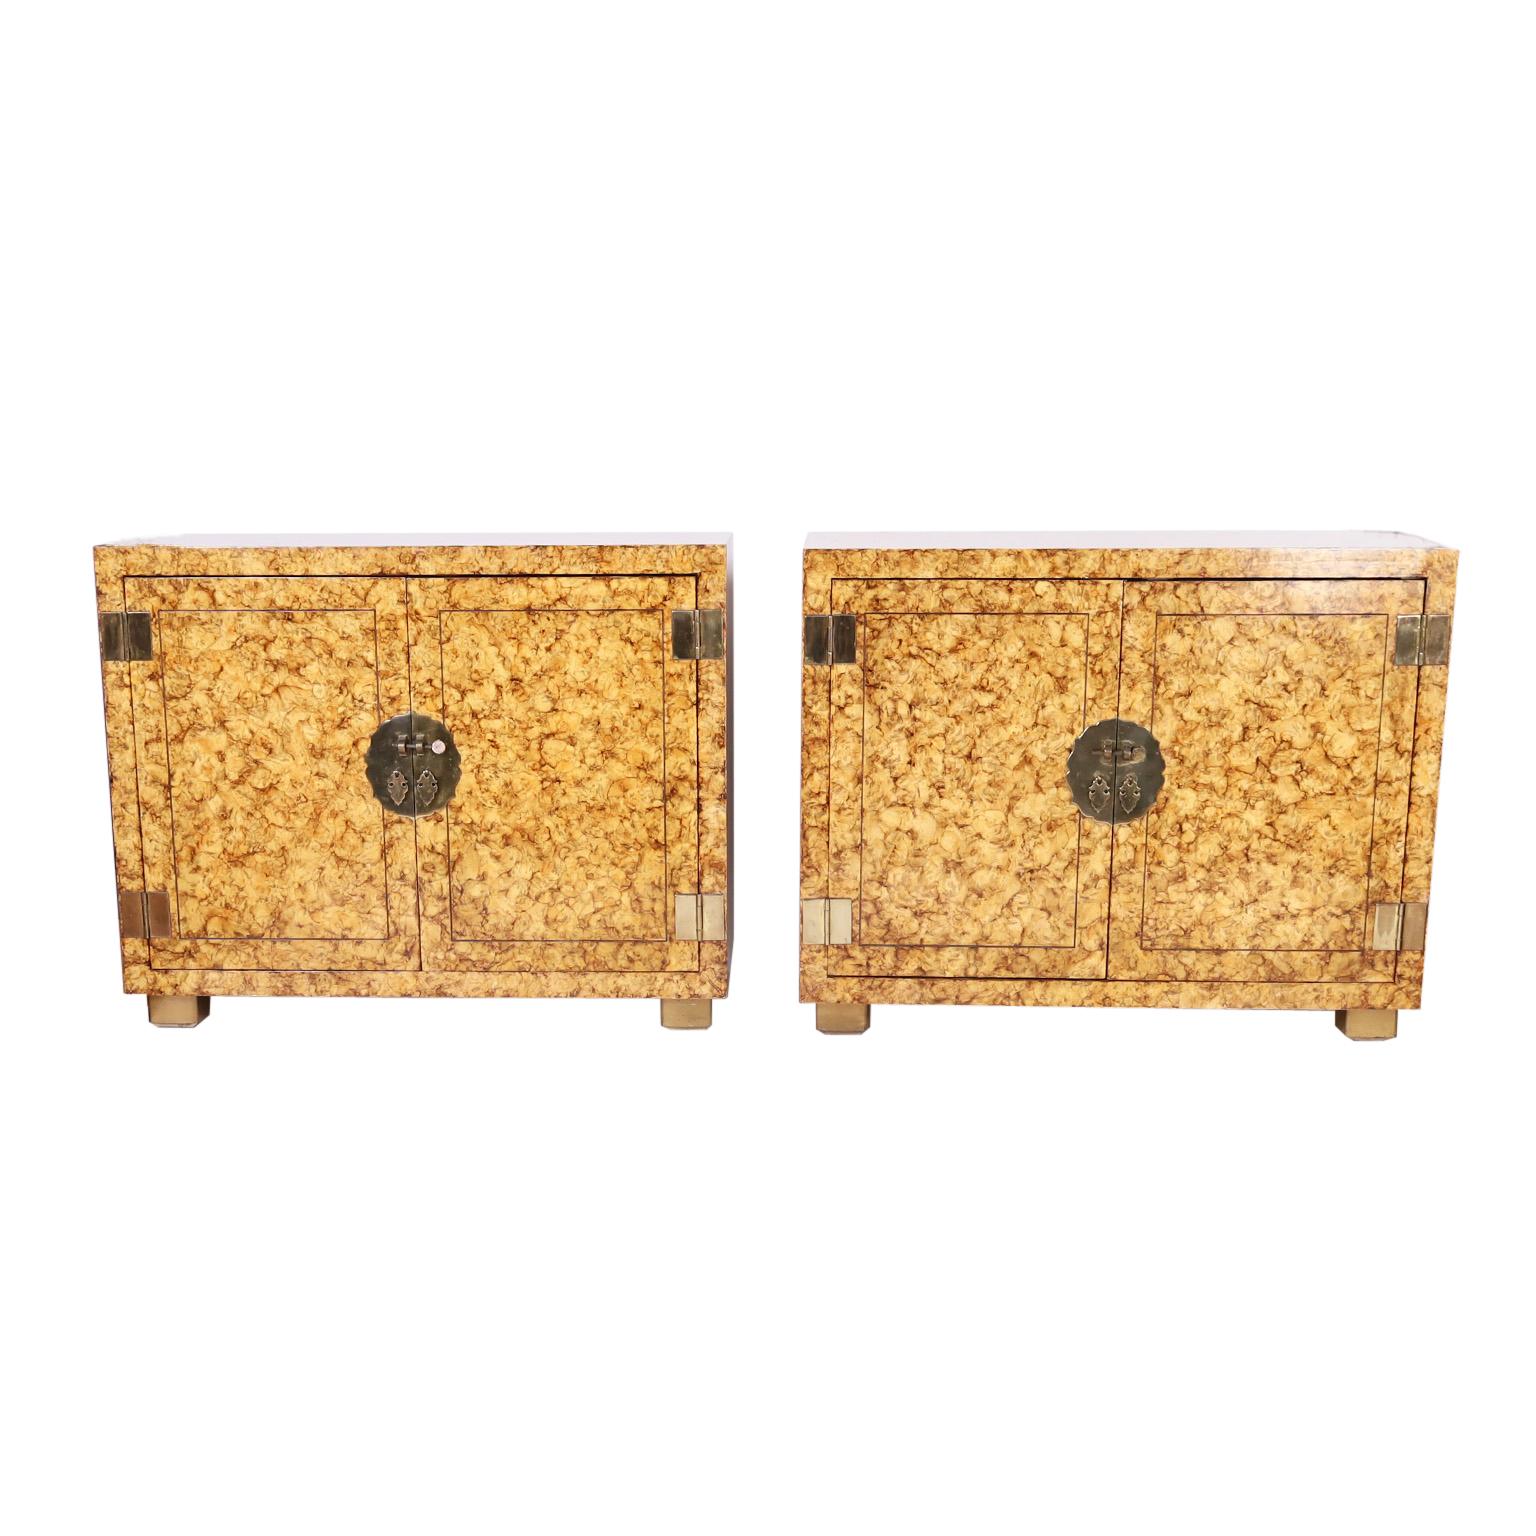 Paire d'armoires vintage étonnantes fabriquées en bois dur dans un style asiatique épuré avec des ferrures en laiton et présentant une finition chic en fausse tortue stylisée. Signé Henredon dans un tiroir.